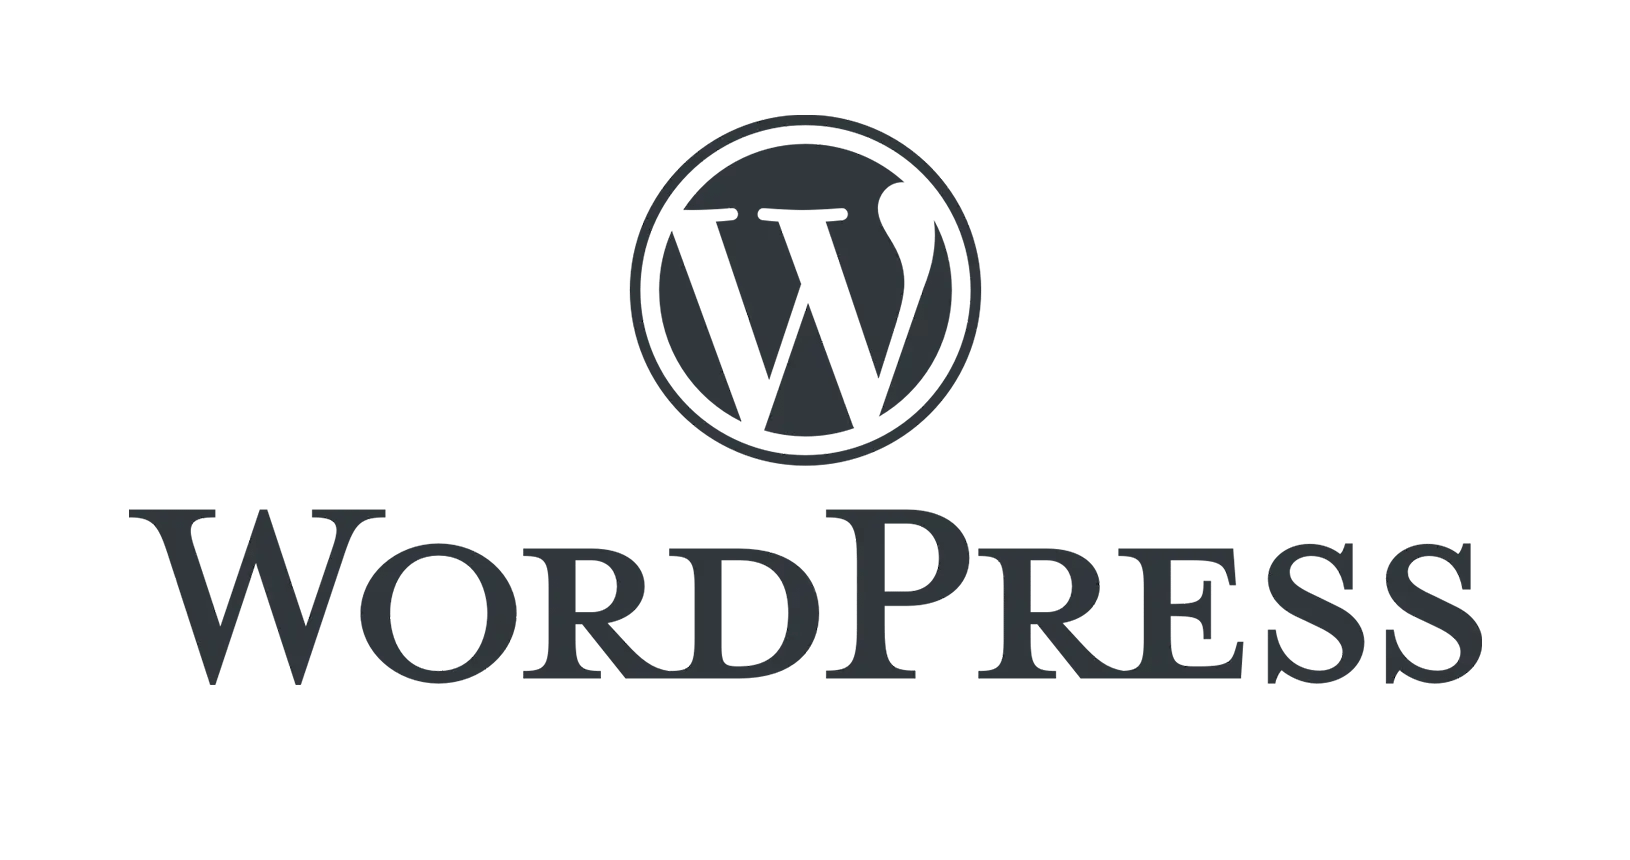 Top Graphics Website Design Wordpress